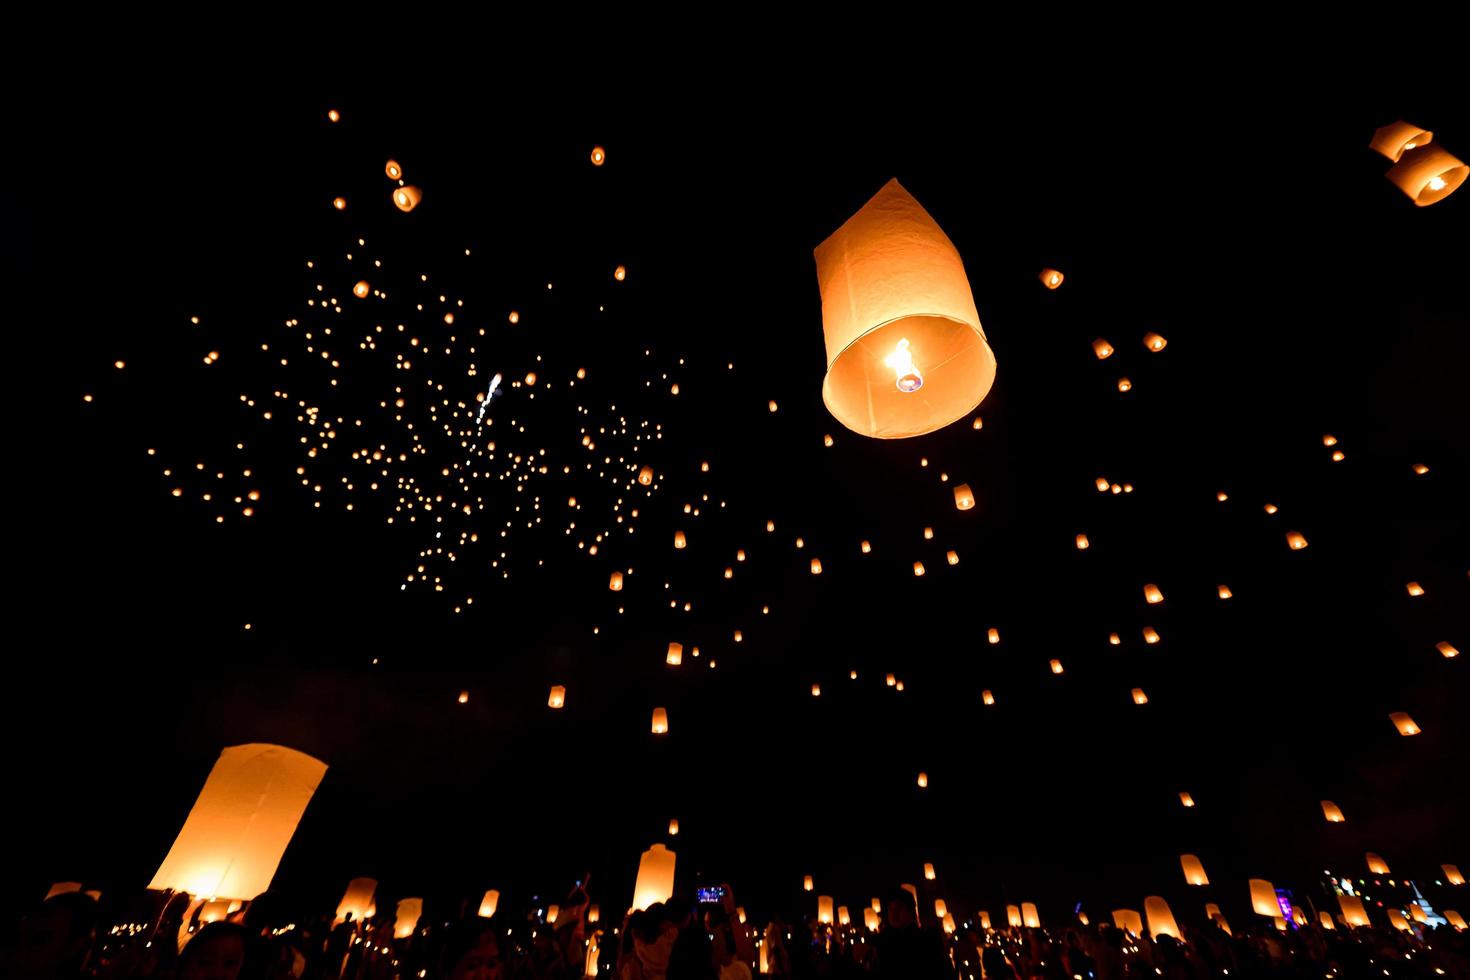 lanternas flutuantes no céu no festival loy krathong foto